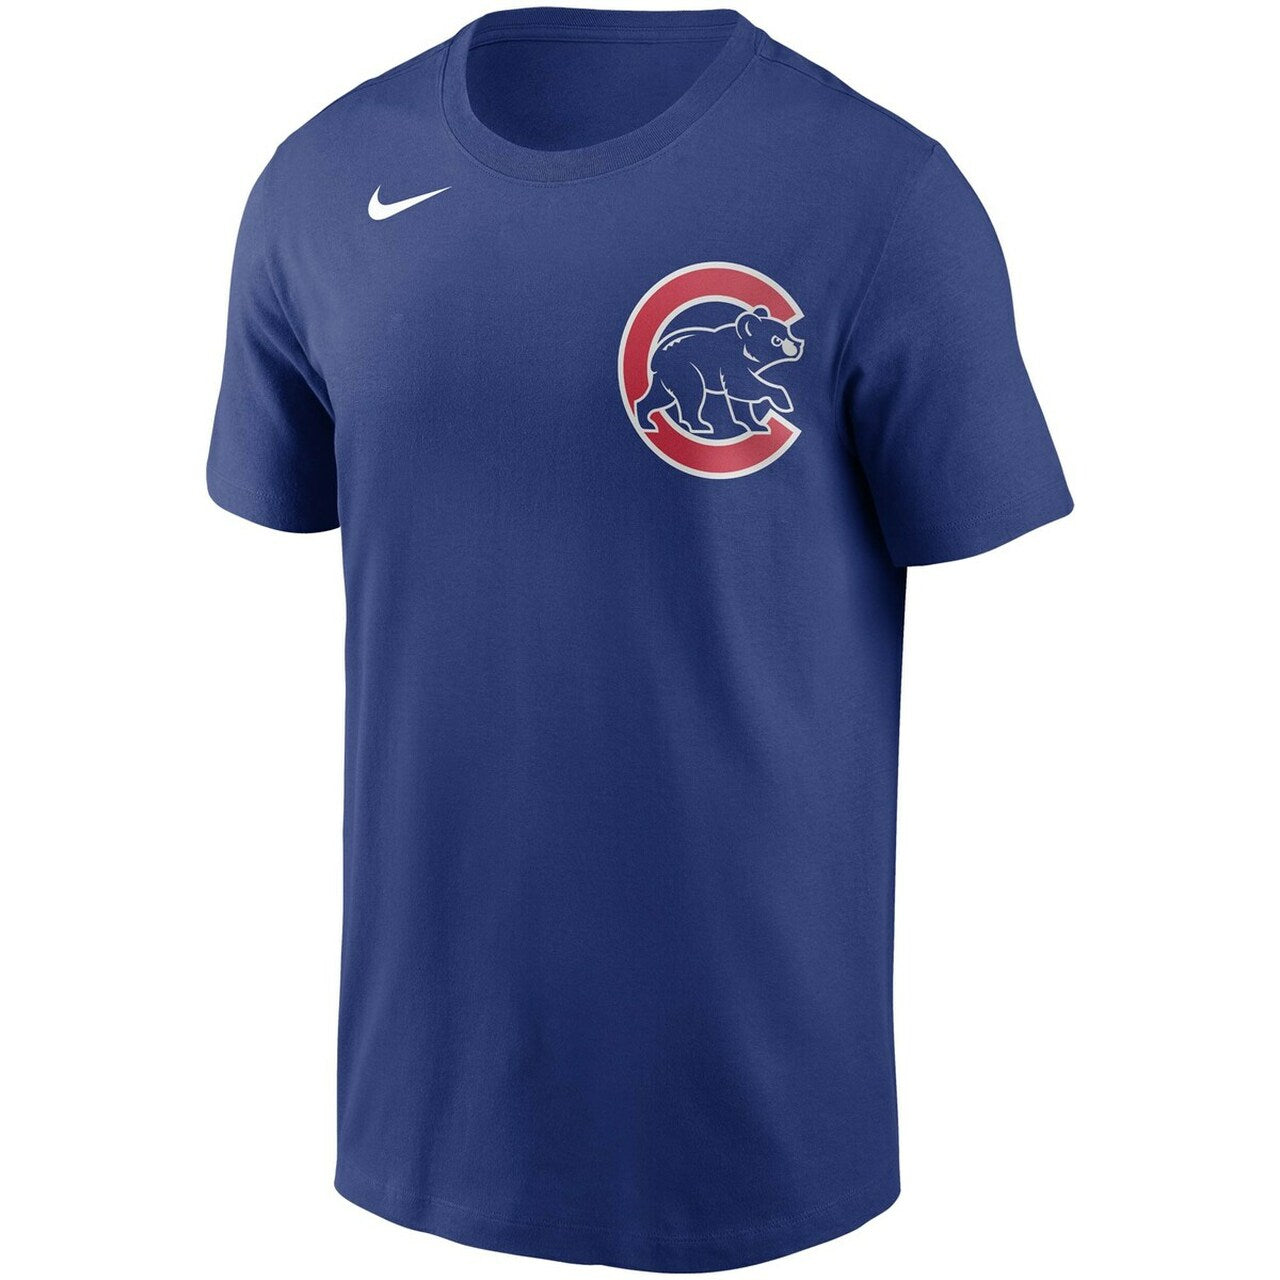 Men's Chicago Cubs Seiya Suzuki Nike Royal Blue Name & Number T-Shirt